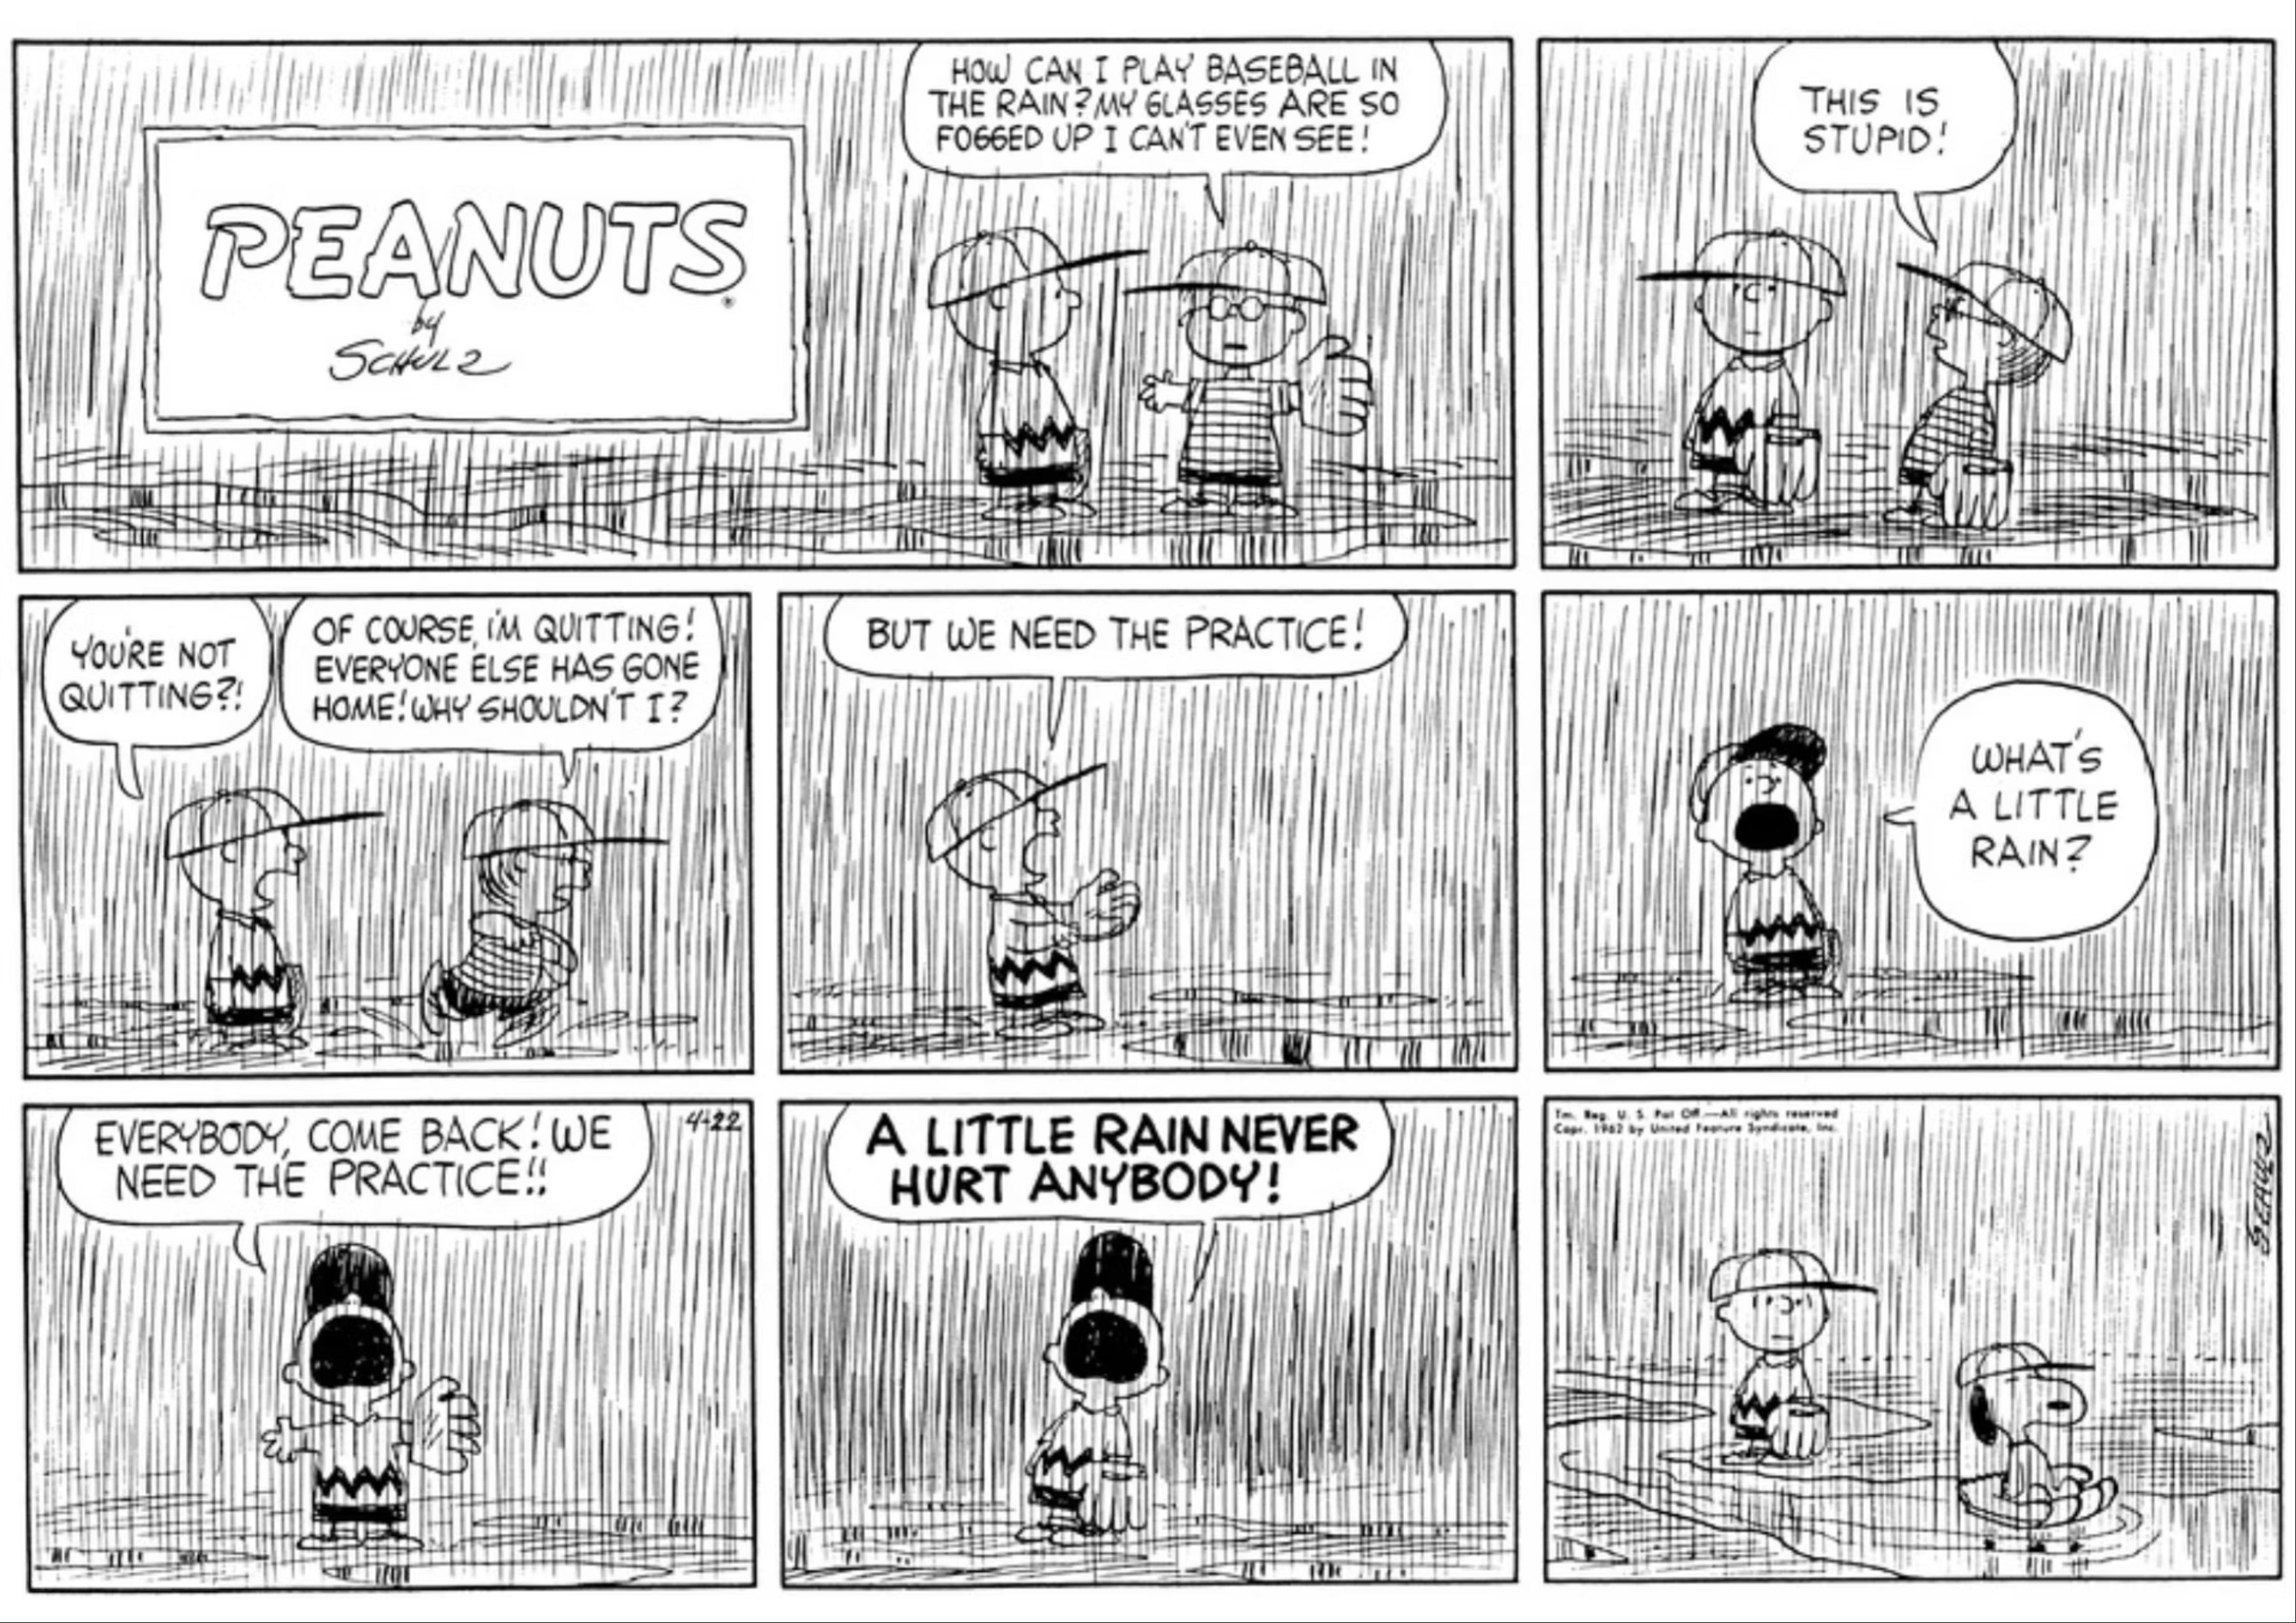 Peanuts gang playing baseball in the rain.